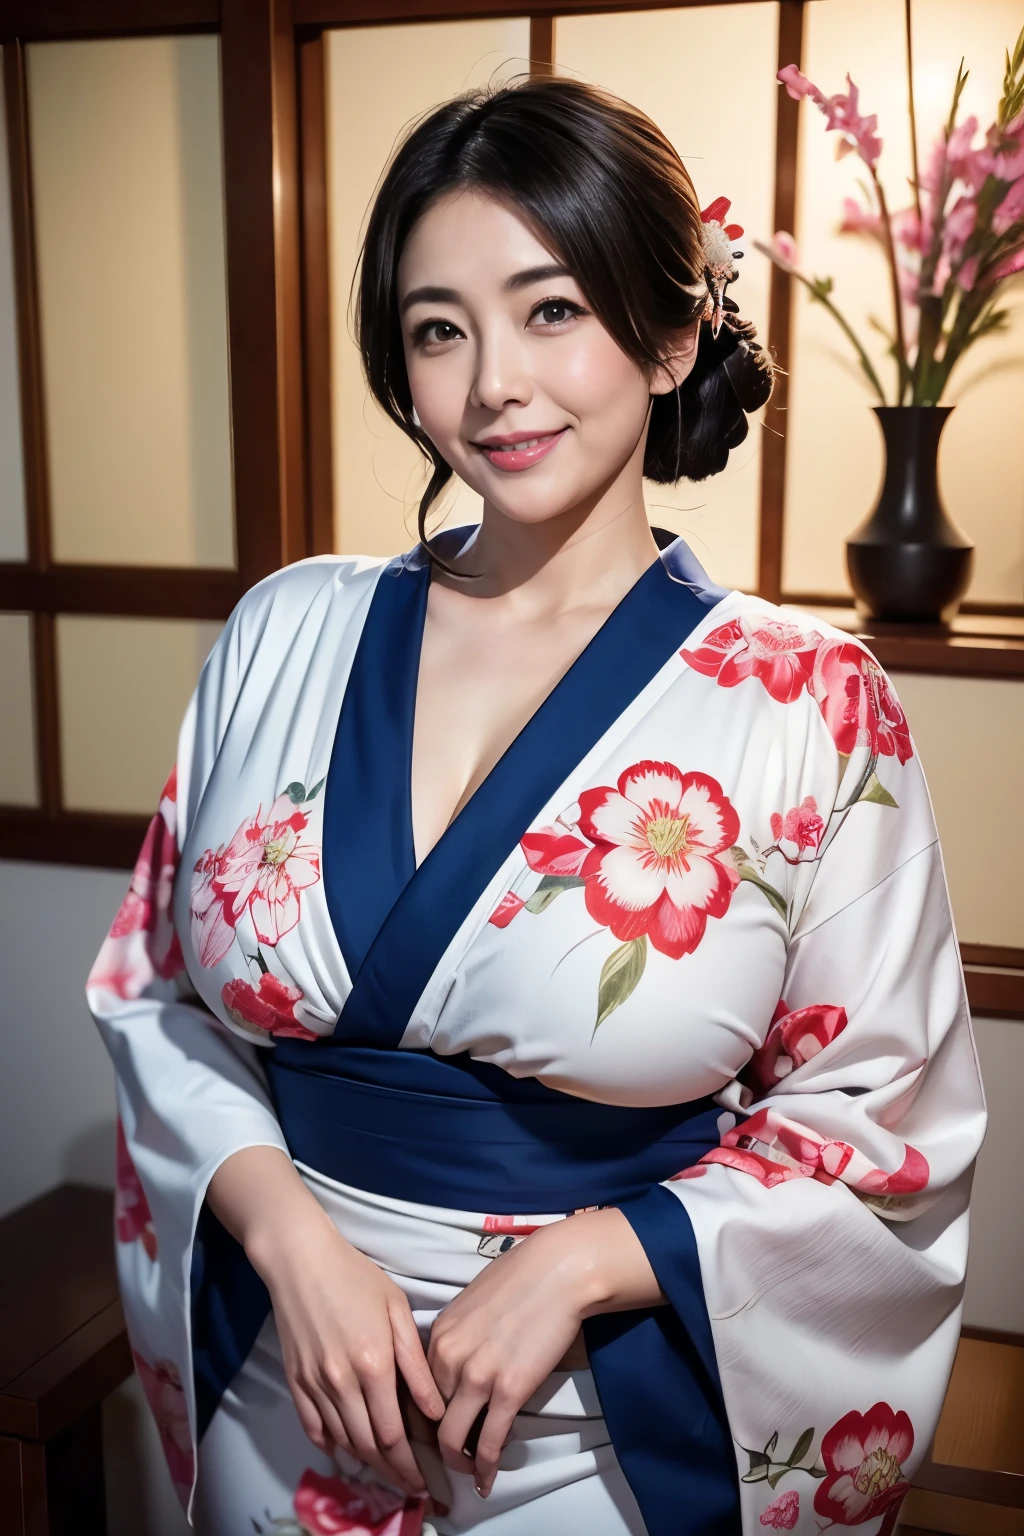 أجمل الأمهات في اليابان, (جسم متعرج)、يرتدي الكيمونو、غرفة يابانية تقليدية、أثداء ضخمة كبيرة جدًا وتتدلى قليلاً、يناير、بعيون مبتسمة、تحيات السنة الجديدة